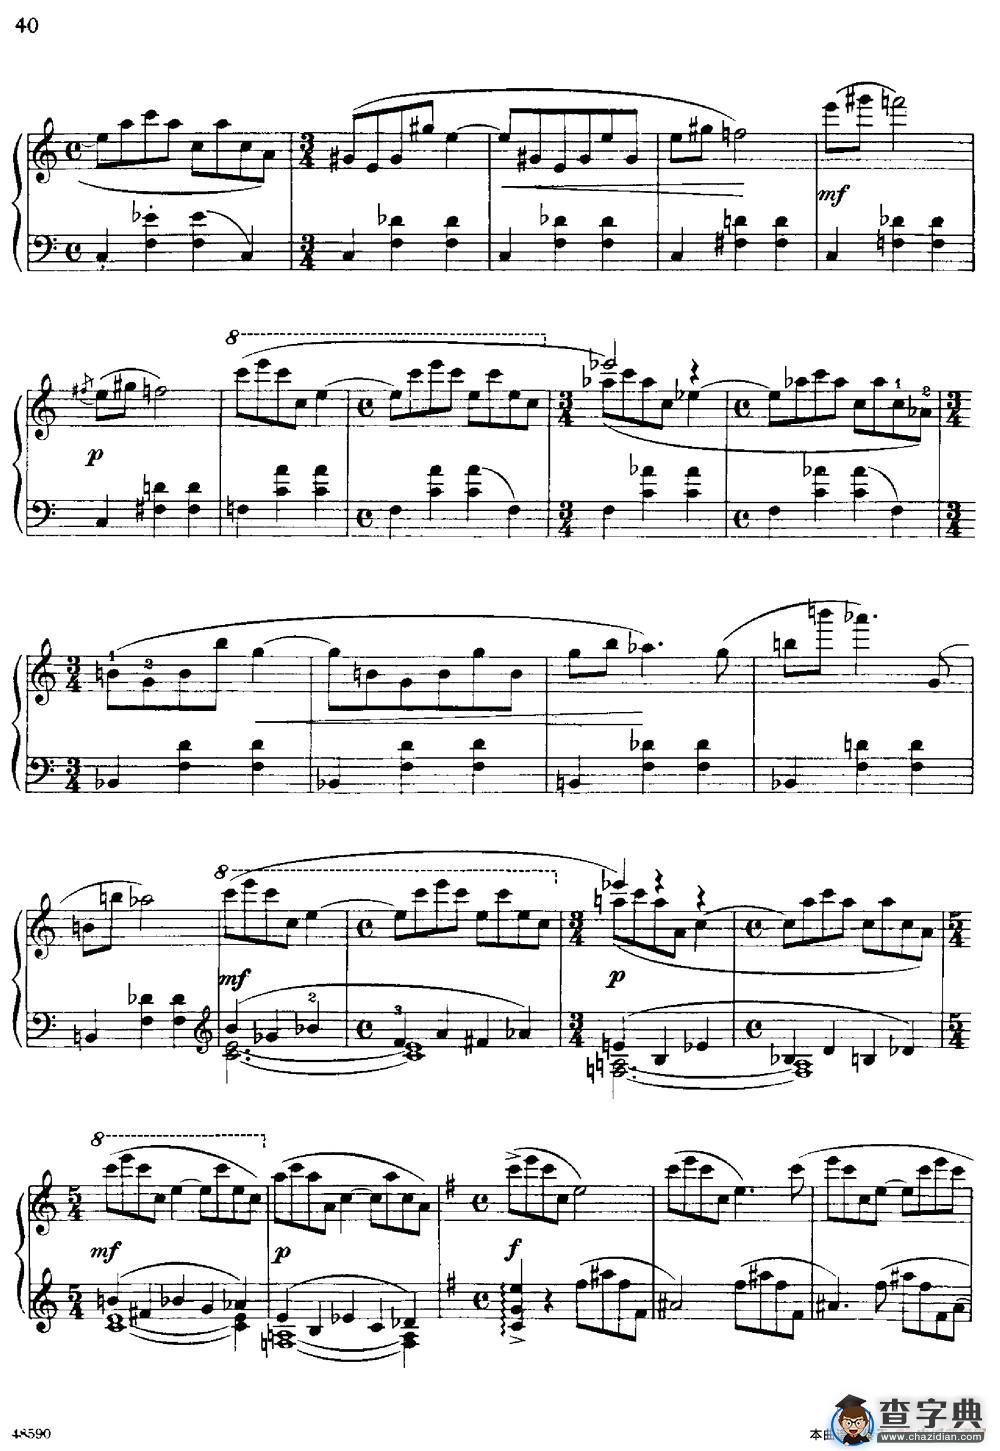 塞缪尔·巴伯 - 降e小调钢琴奏鸣曲 op.26 v.2钢琴谱